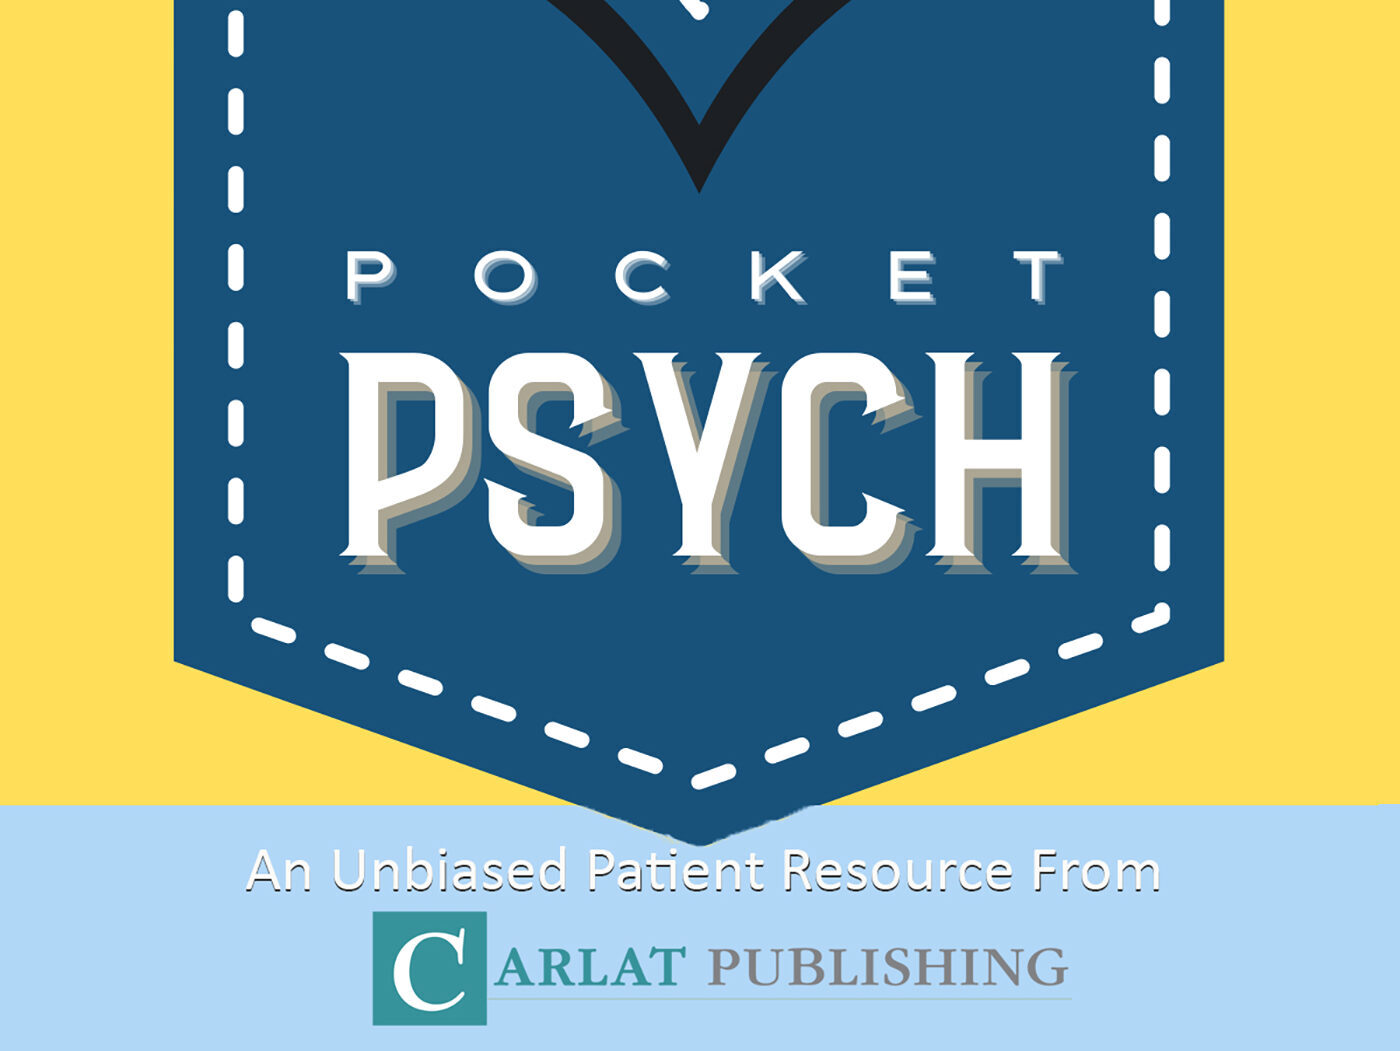 The Pocket Psychiatrist: A Carlat Podcast